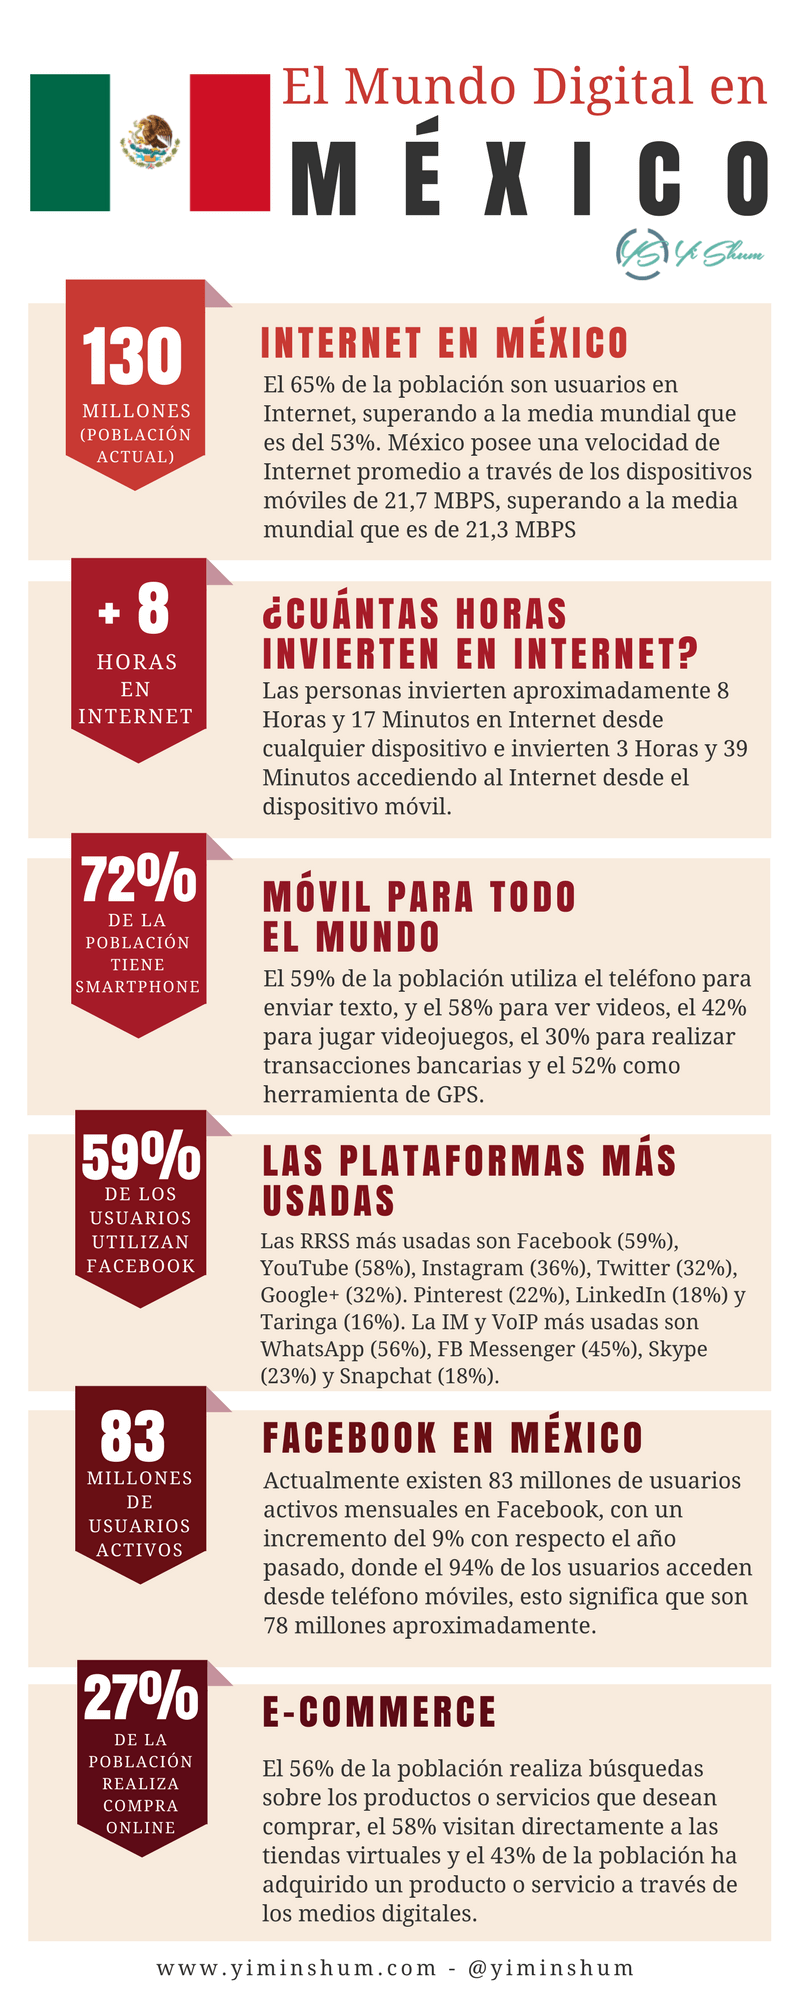 el mundo digital México 2018 - parte 2 - infografía imagen